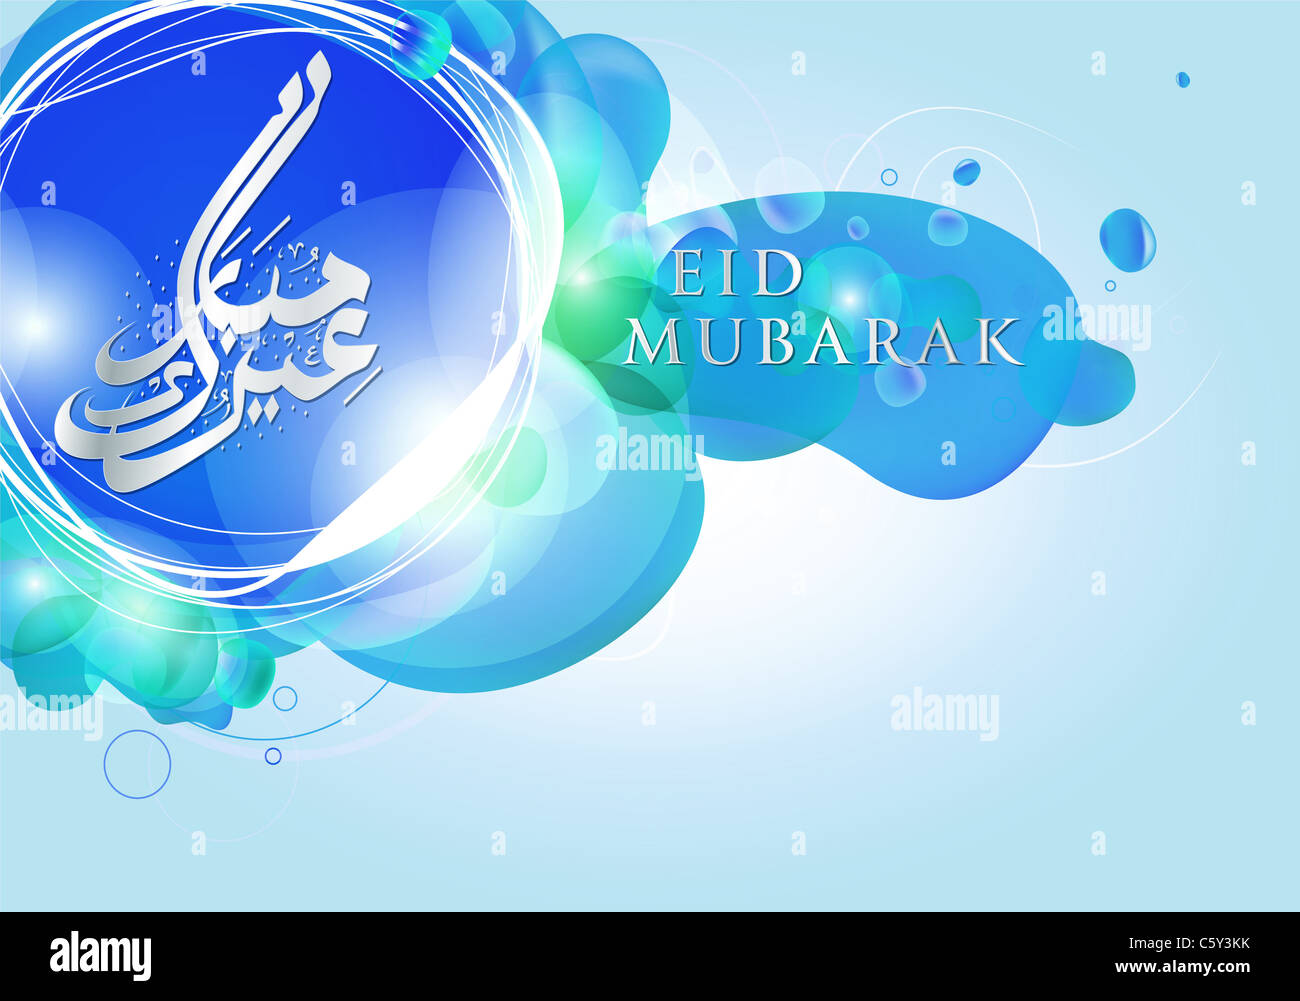 Élégant et moderne, Eid Mubarak célébration islamique design Banque D'Images